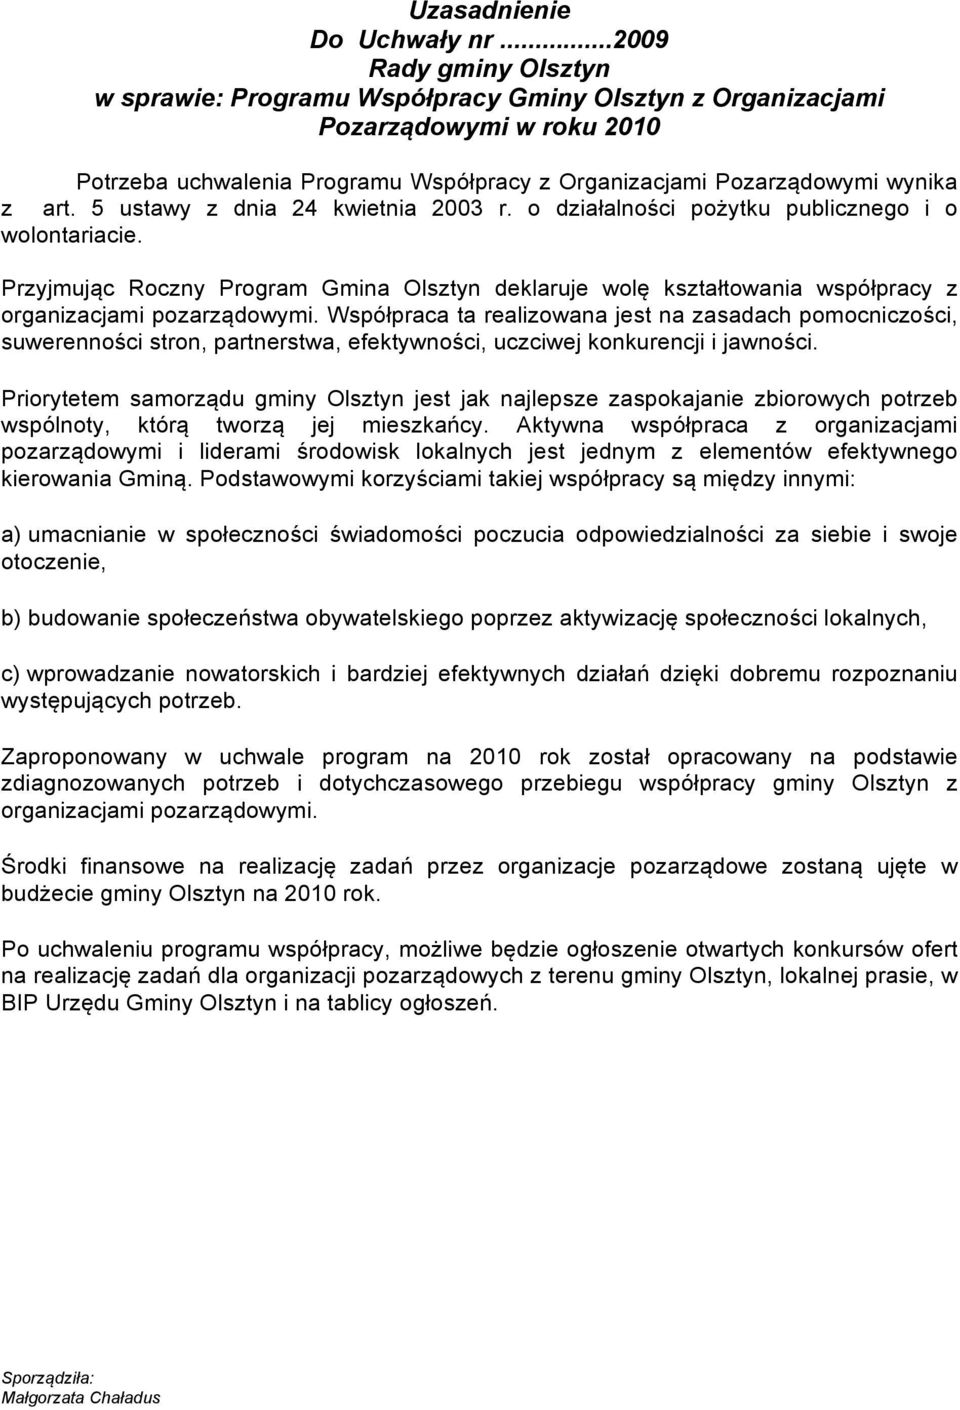 5 ustawy z dnia 24 kwietnia 2003 r. o działalności pożytku publicznego i o wolontariacie. Przyjmując Roczny Program Gmina Olsztyn deklaruje wolę kształtowania współpracy z organizacjami pozarządowymi.